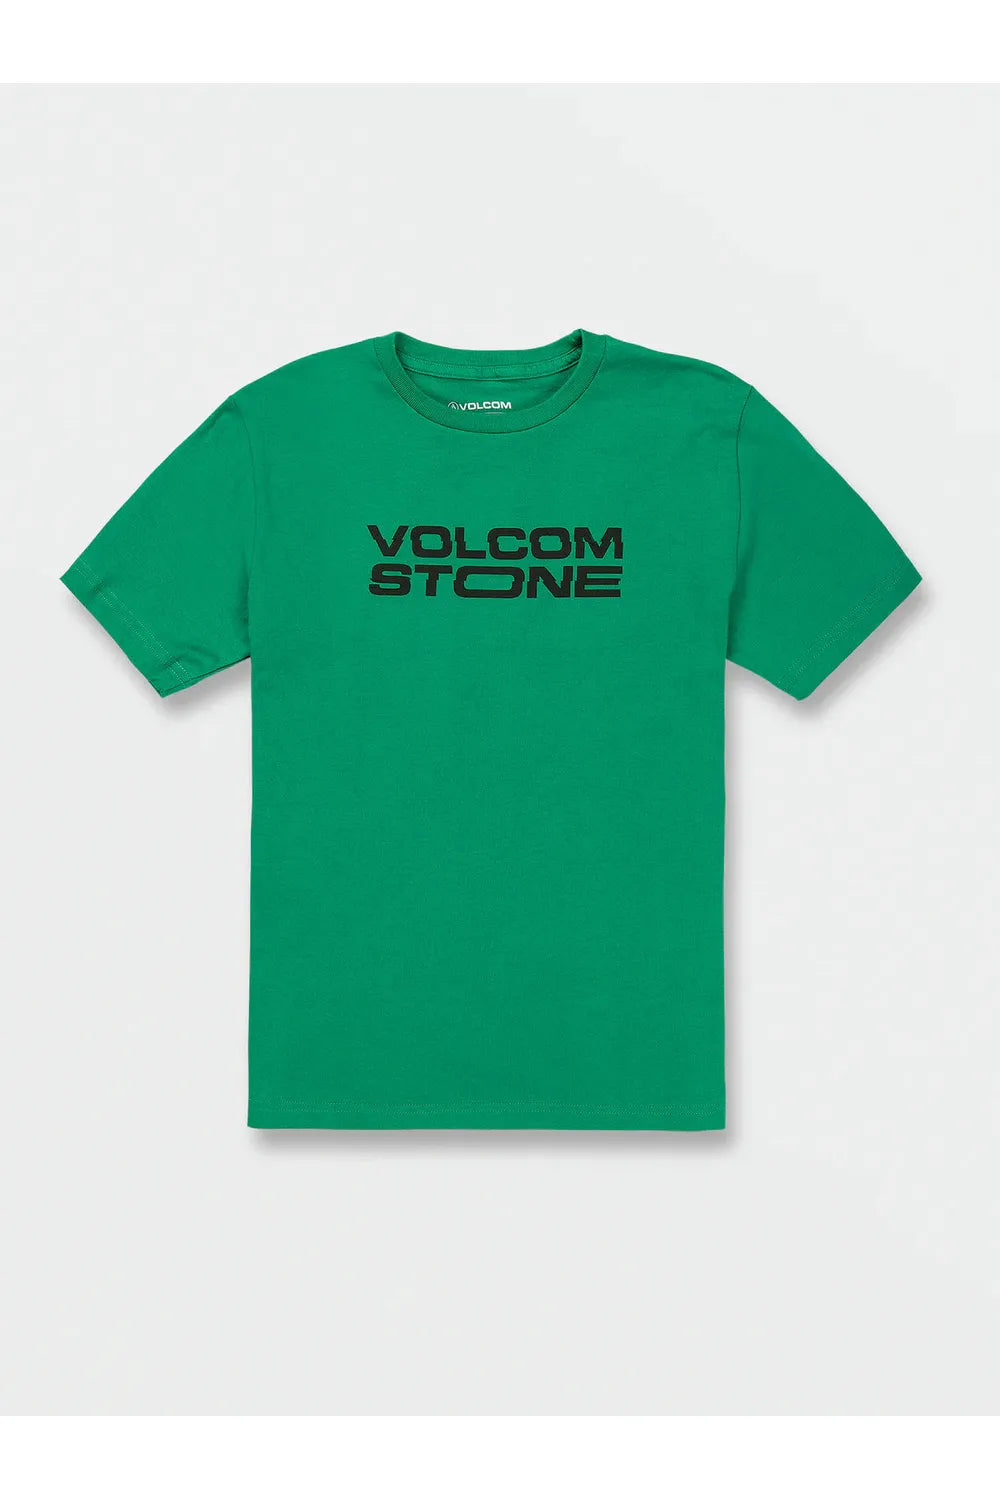 Volcom Euroslash Kids Short Sleeve T-Shirt